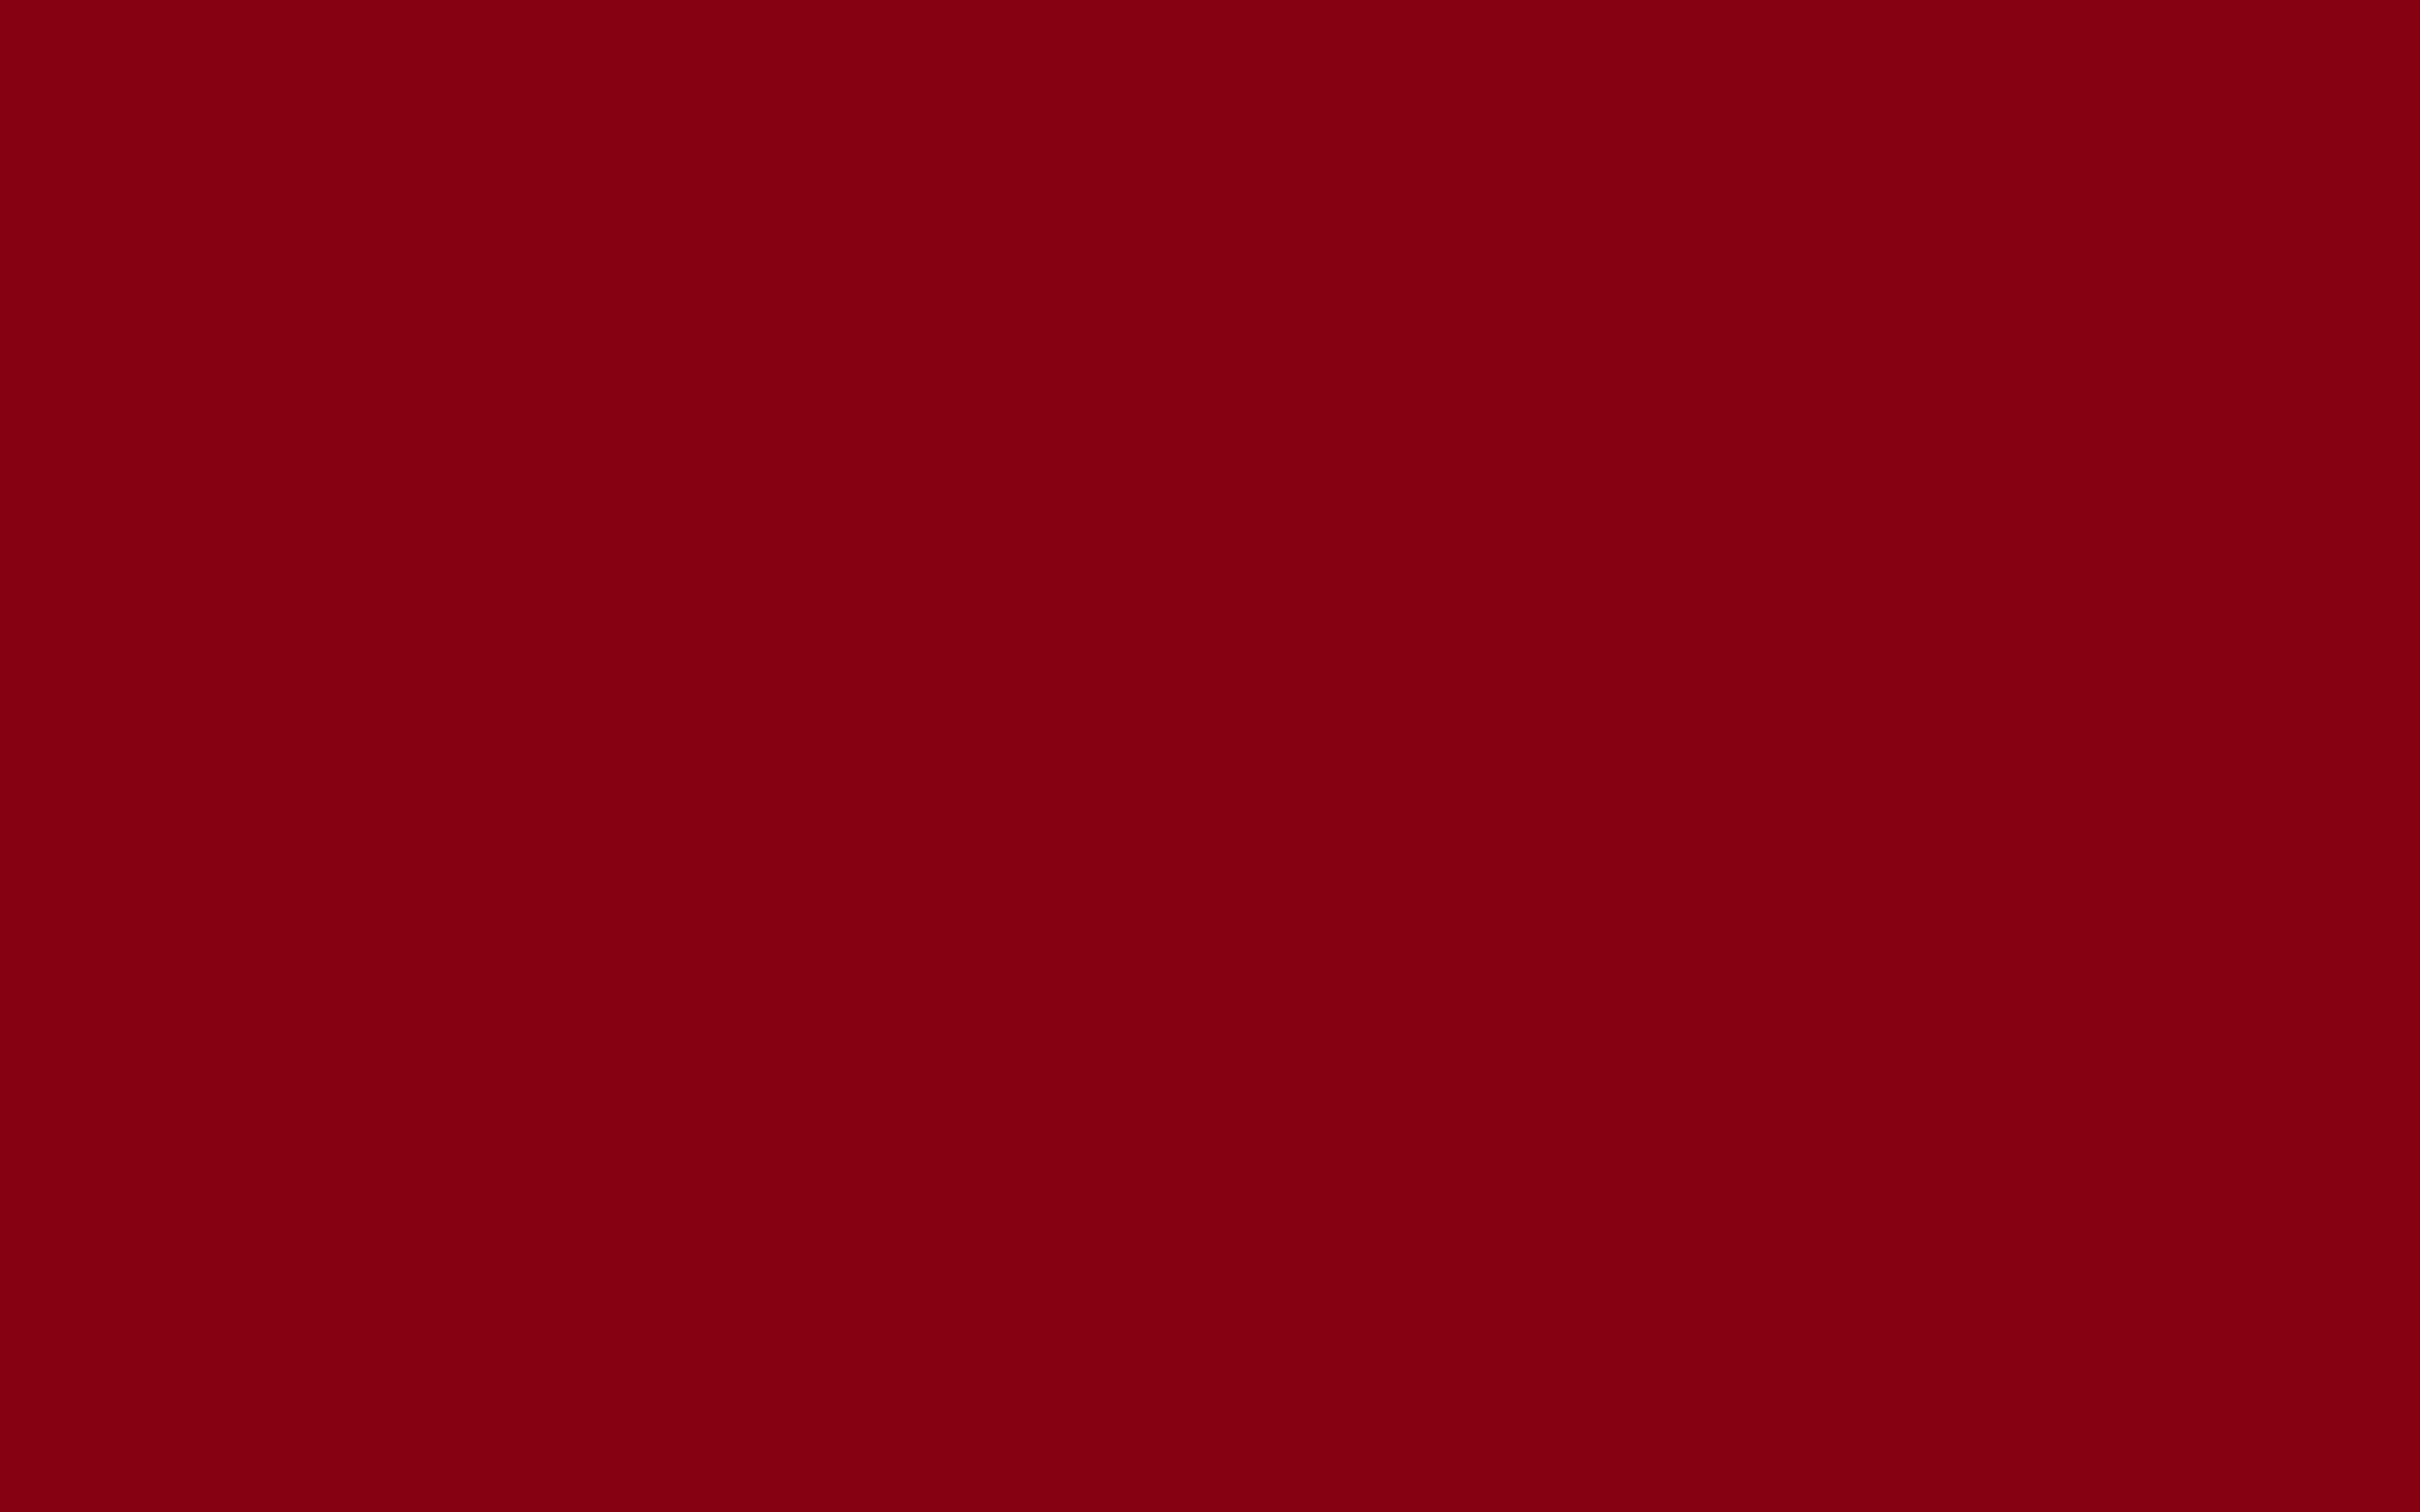 Jpeg 63kb Background Color Solid Red Devil Background Image